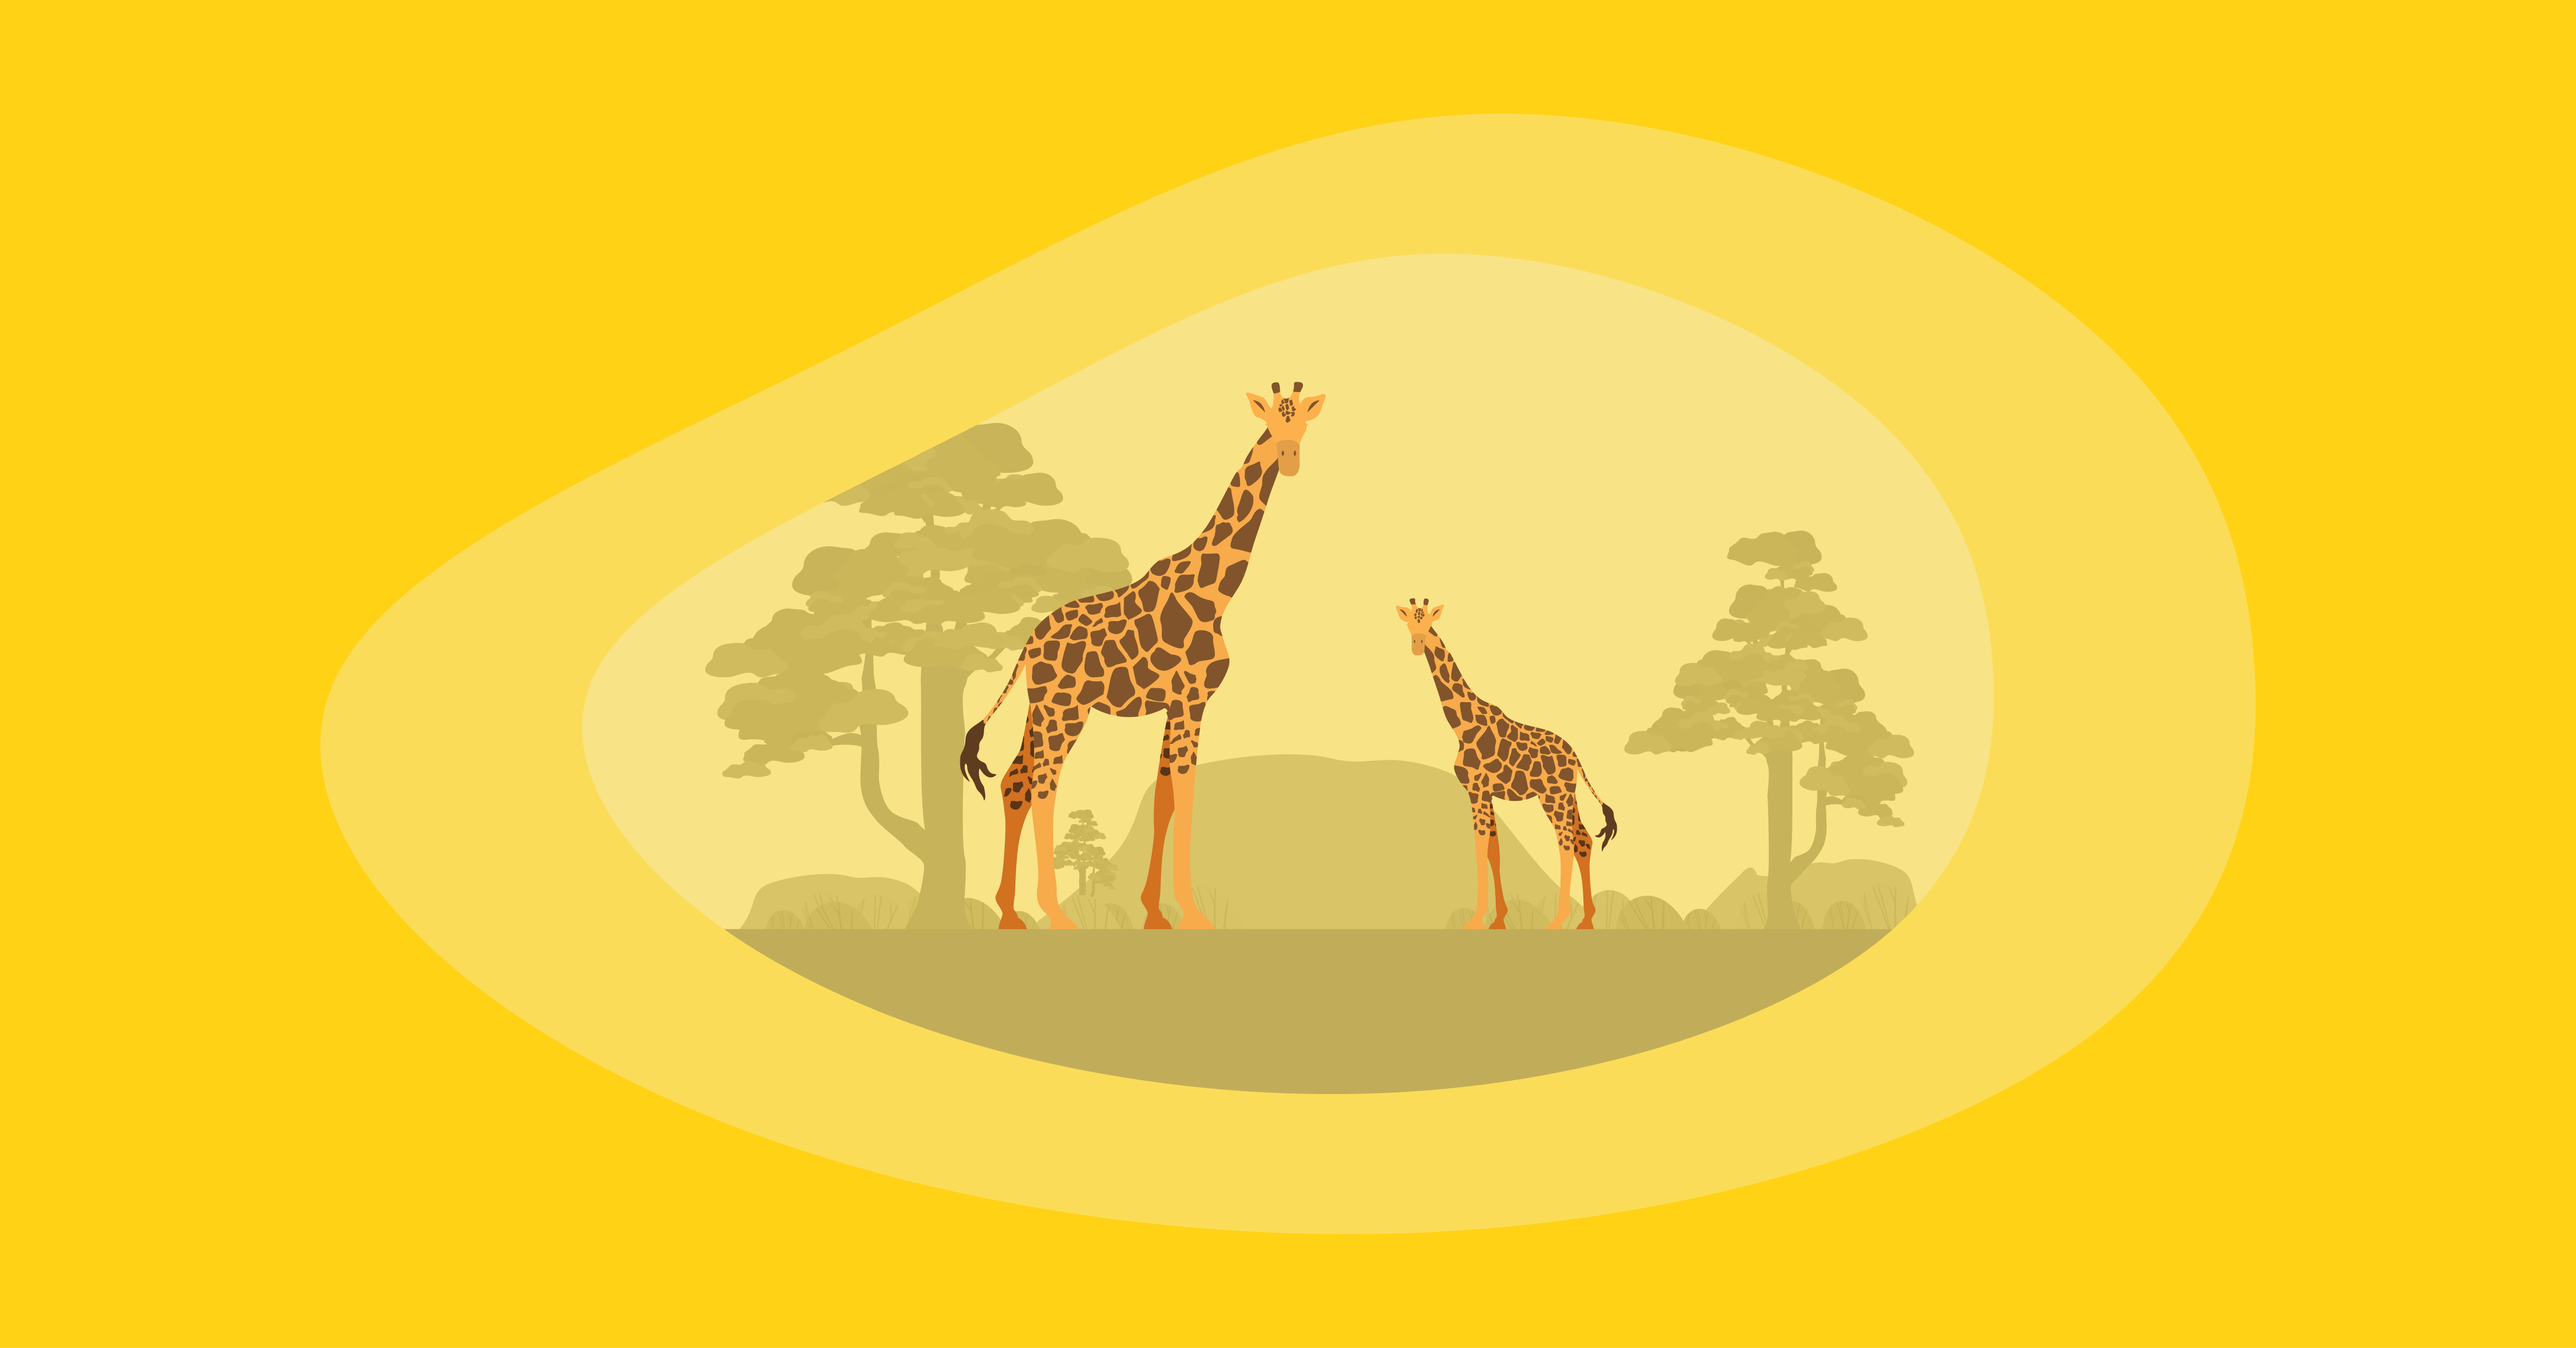 Illustration of two giraffes